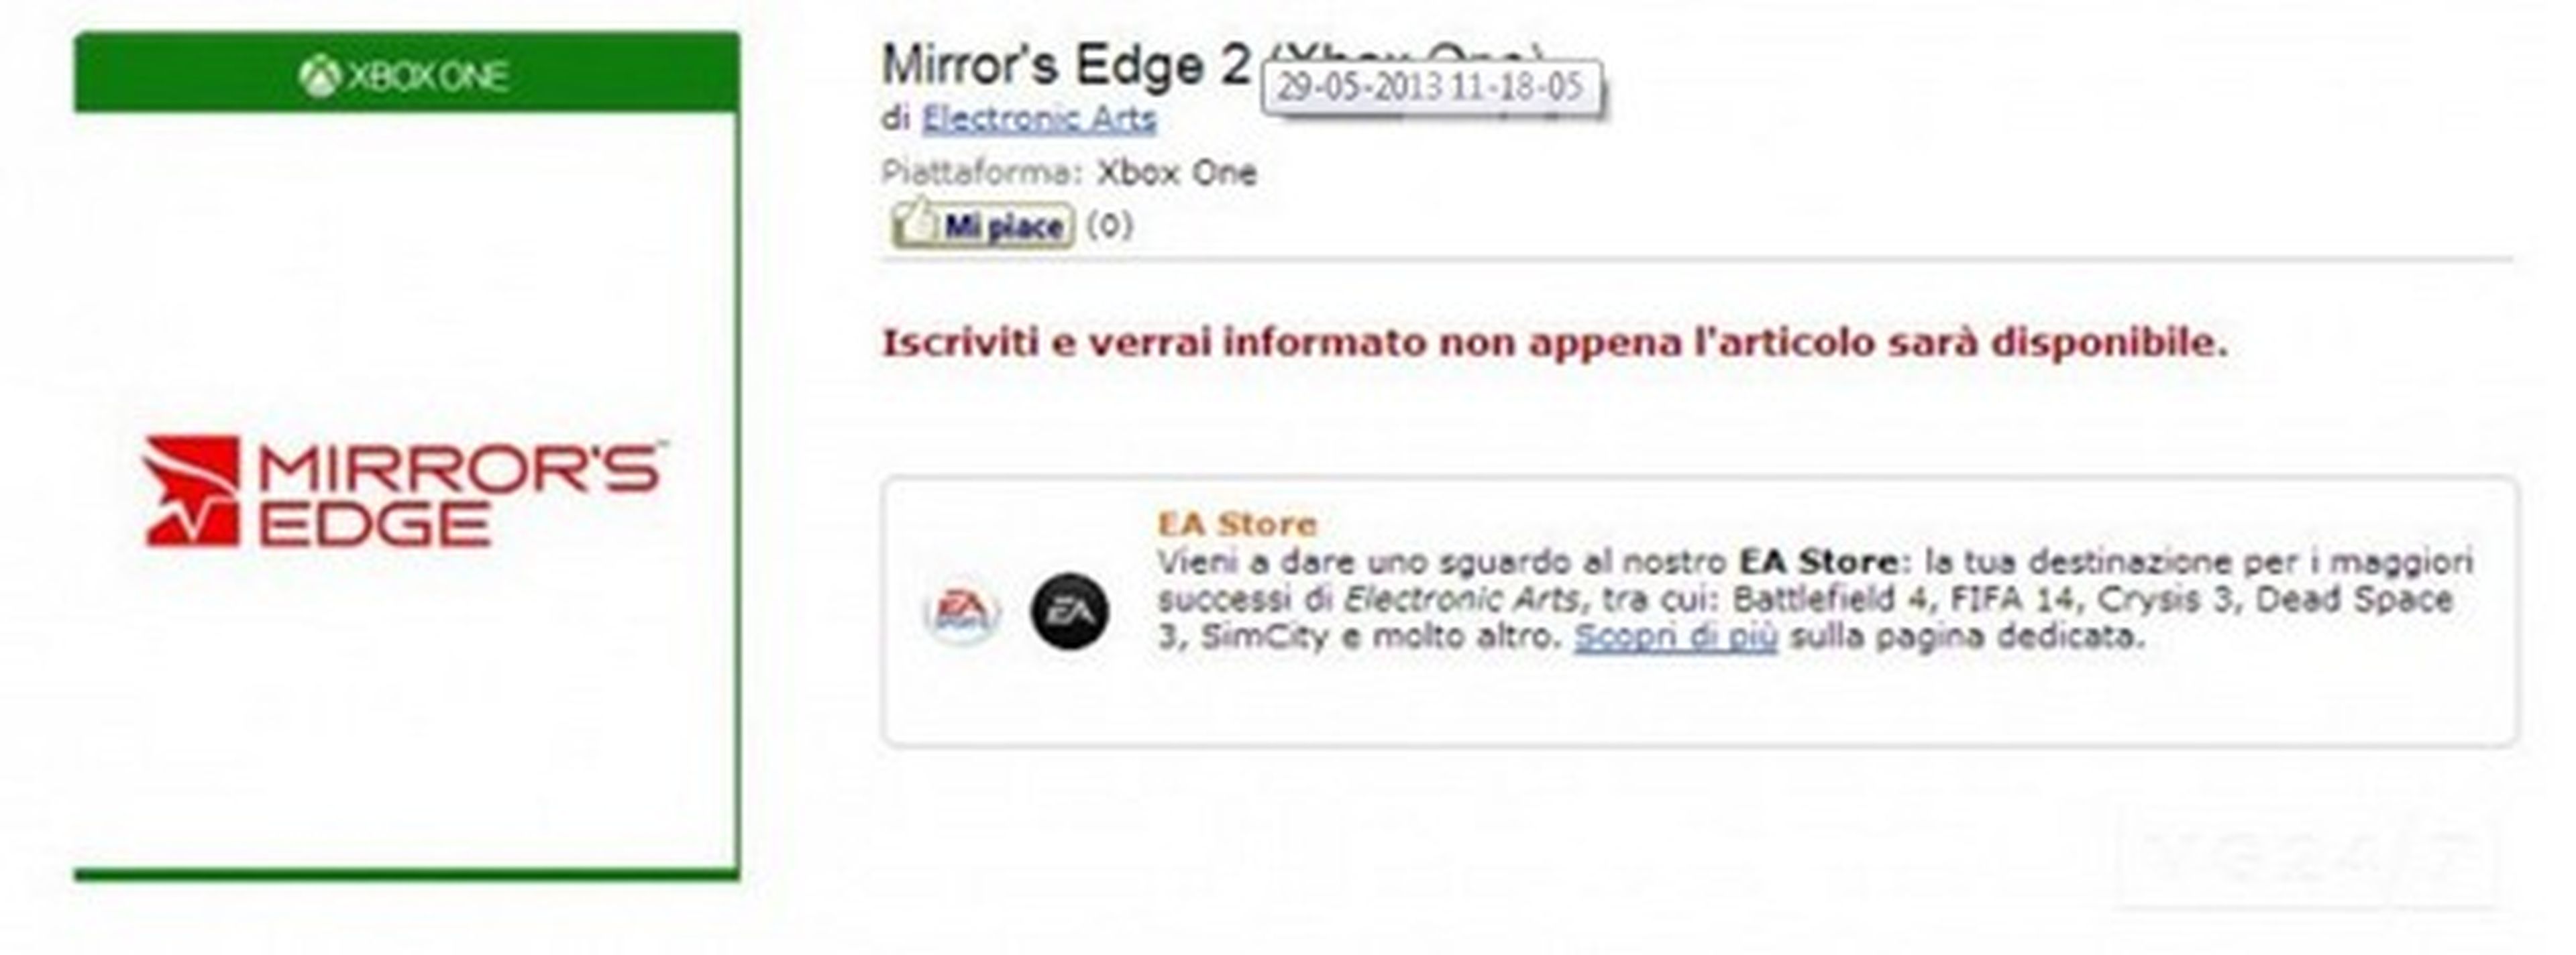 Mirror's Edge 2 para Xbox One listado por Amazon